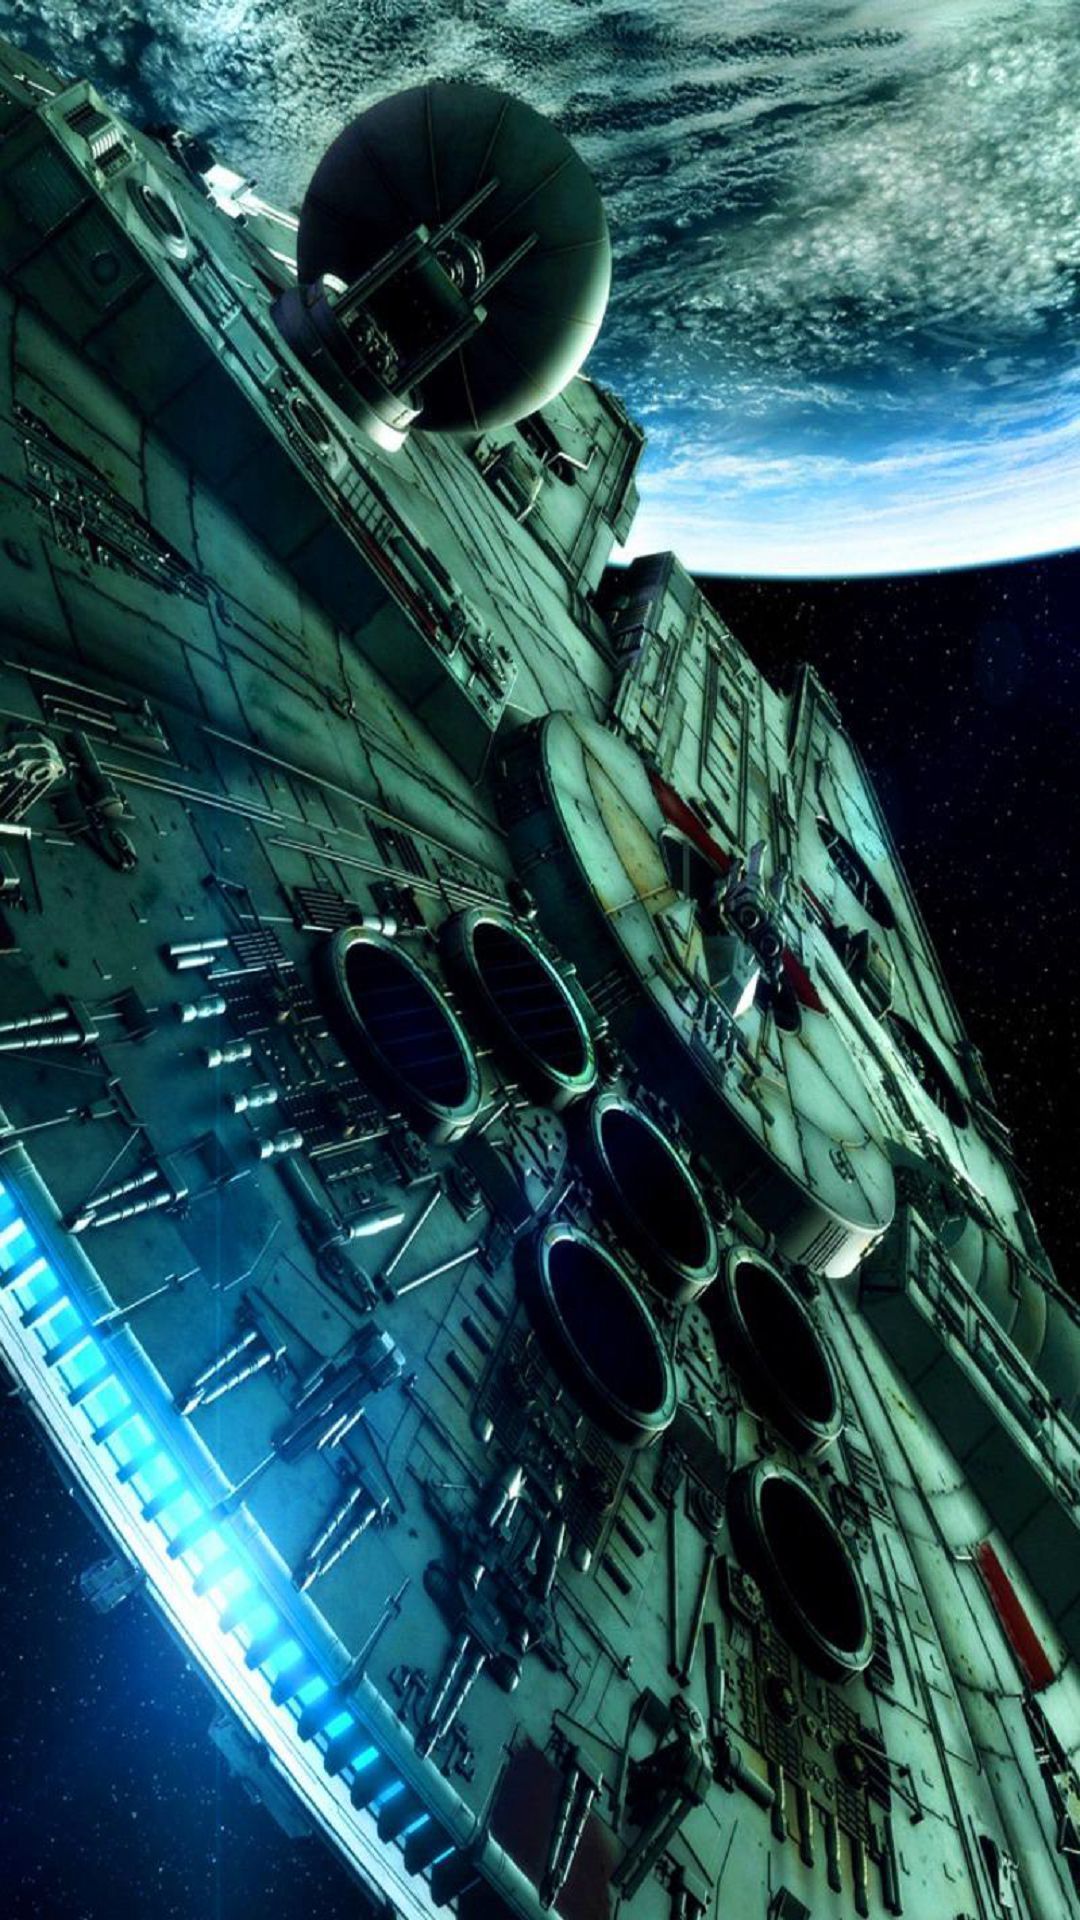 Los 20 mejores fondos de pantalla de Star Wars para tu móvil